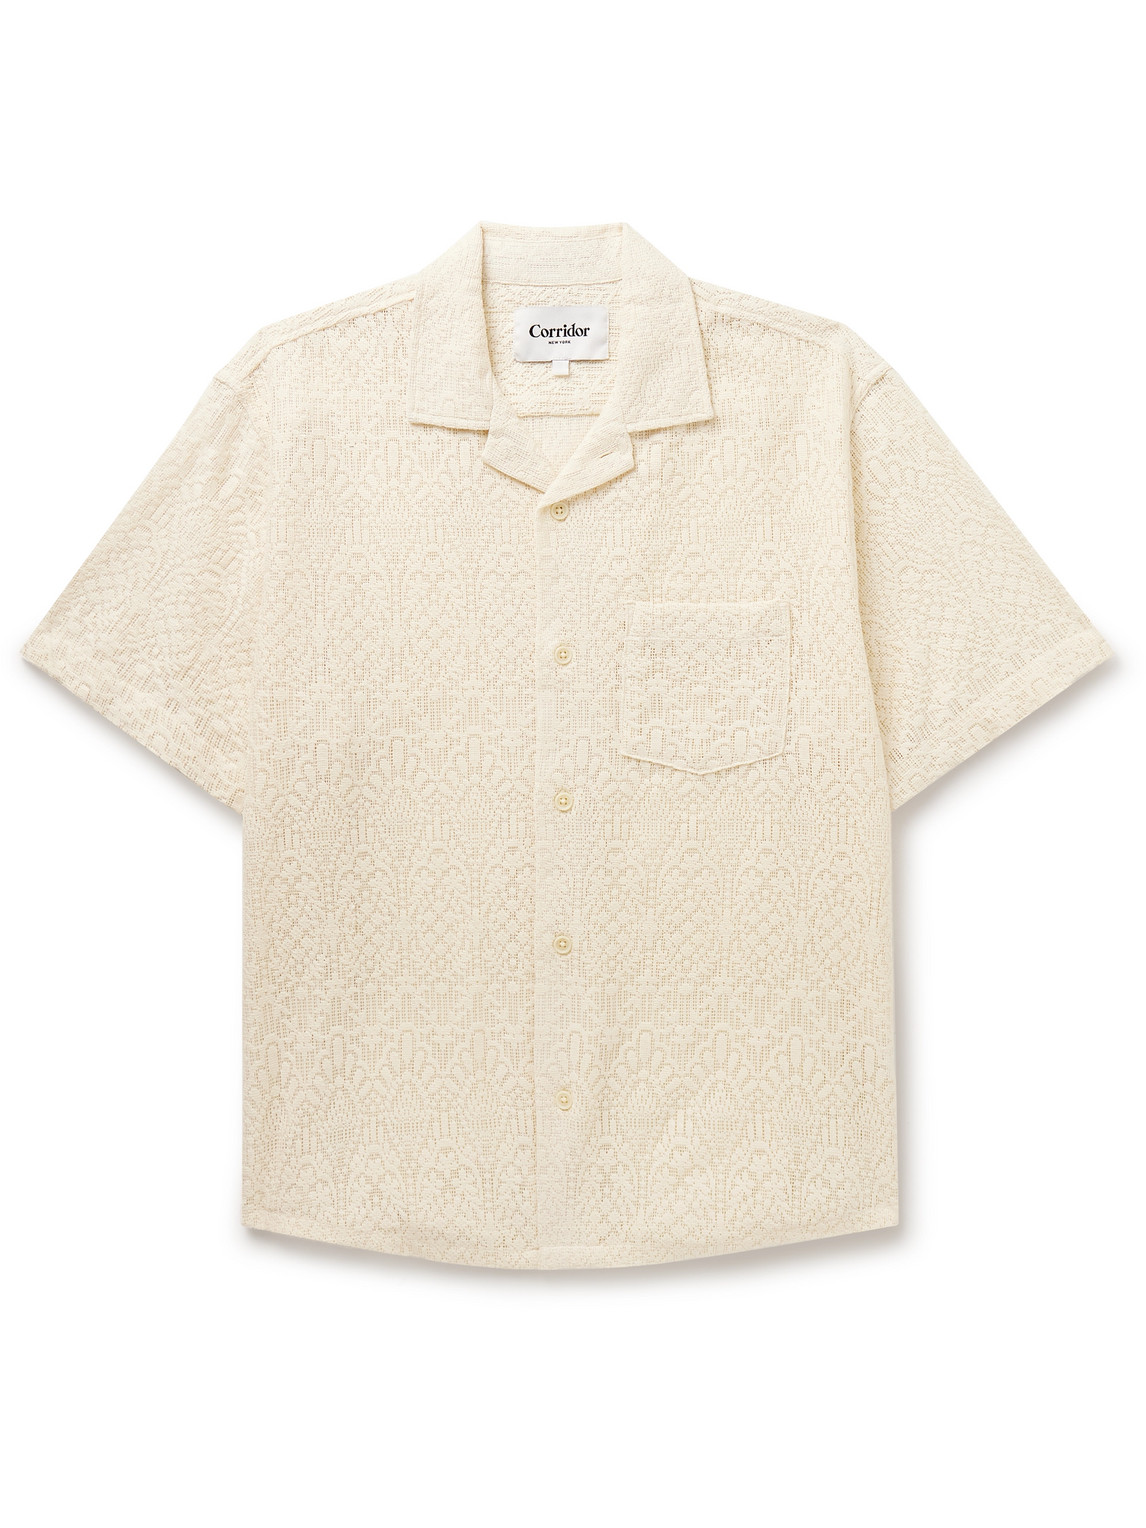 Corridor - Alhambra Camp-Collar Crocheted Cotton-Blend Shirt - Men - Neutrals - XXL von Corridor